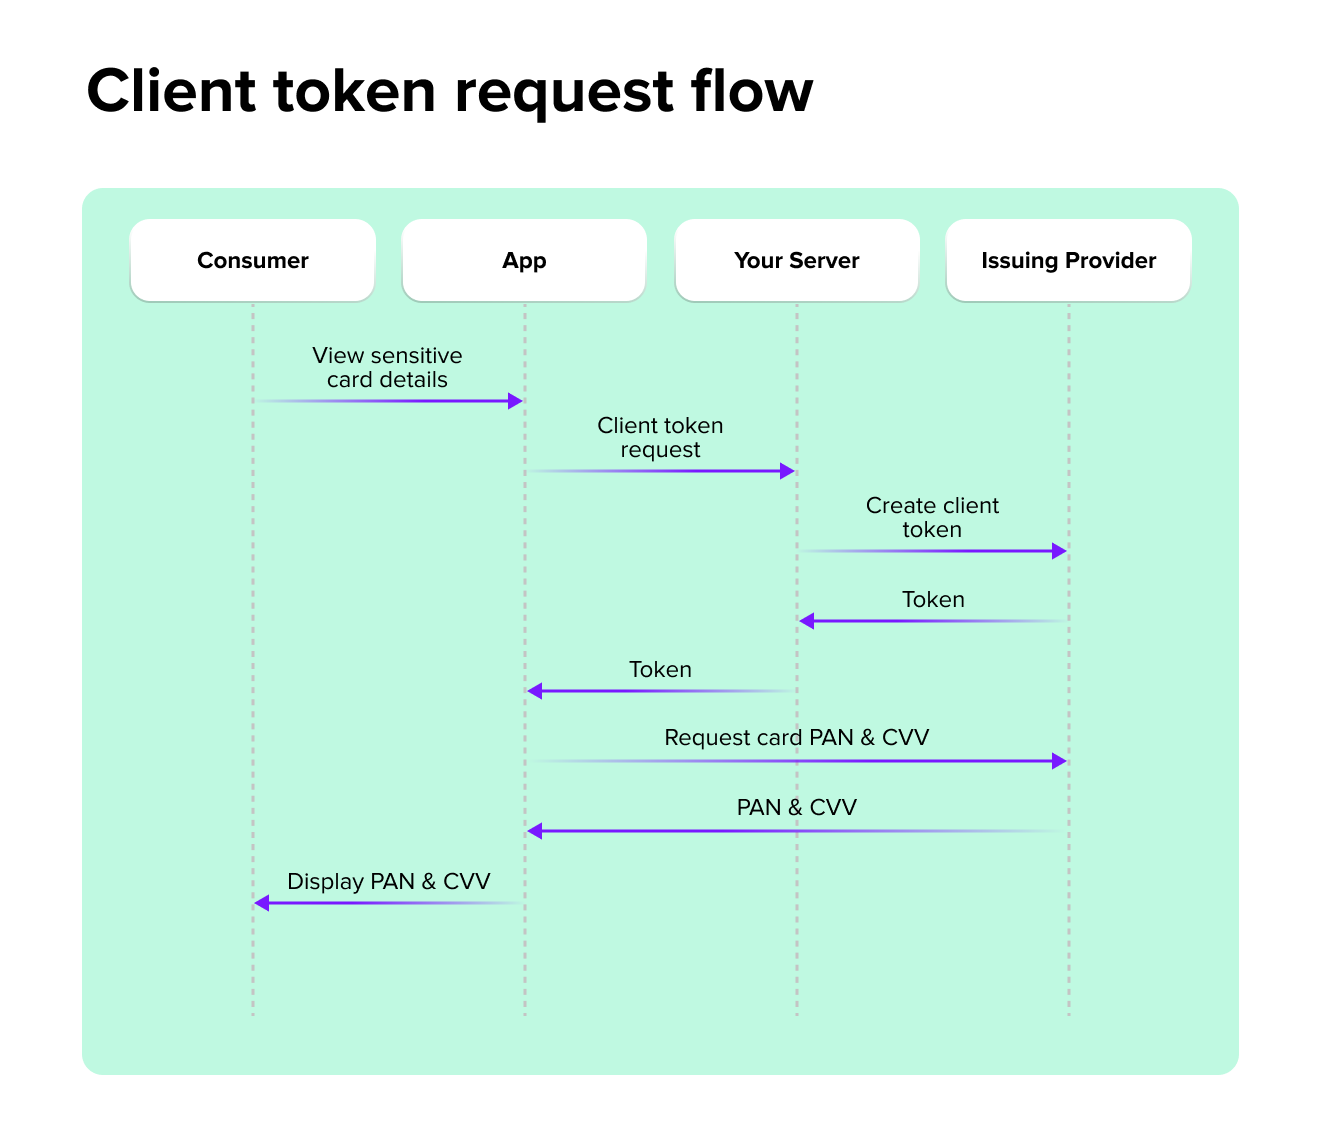 Client token request flow